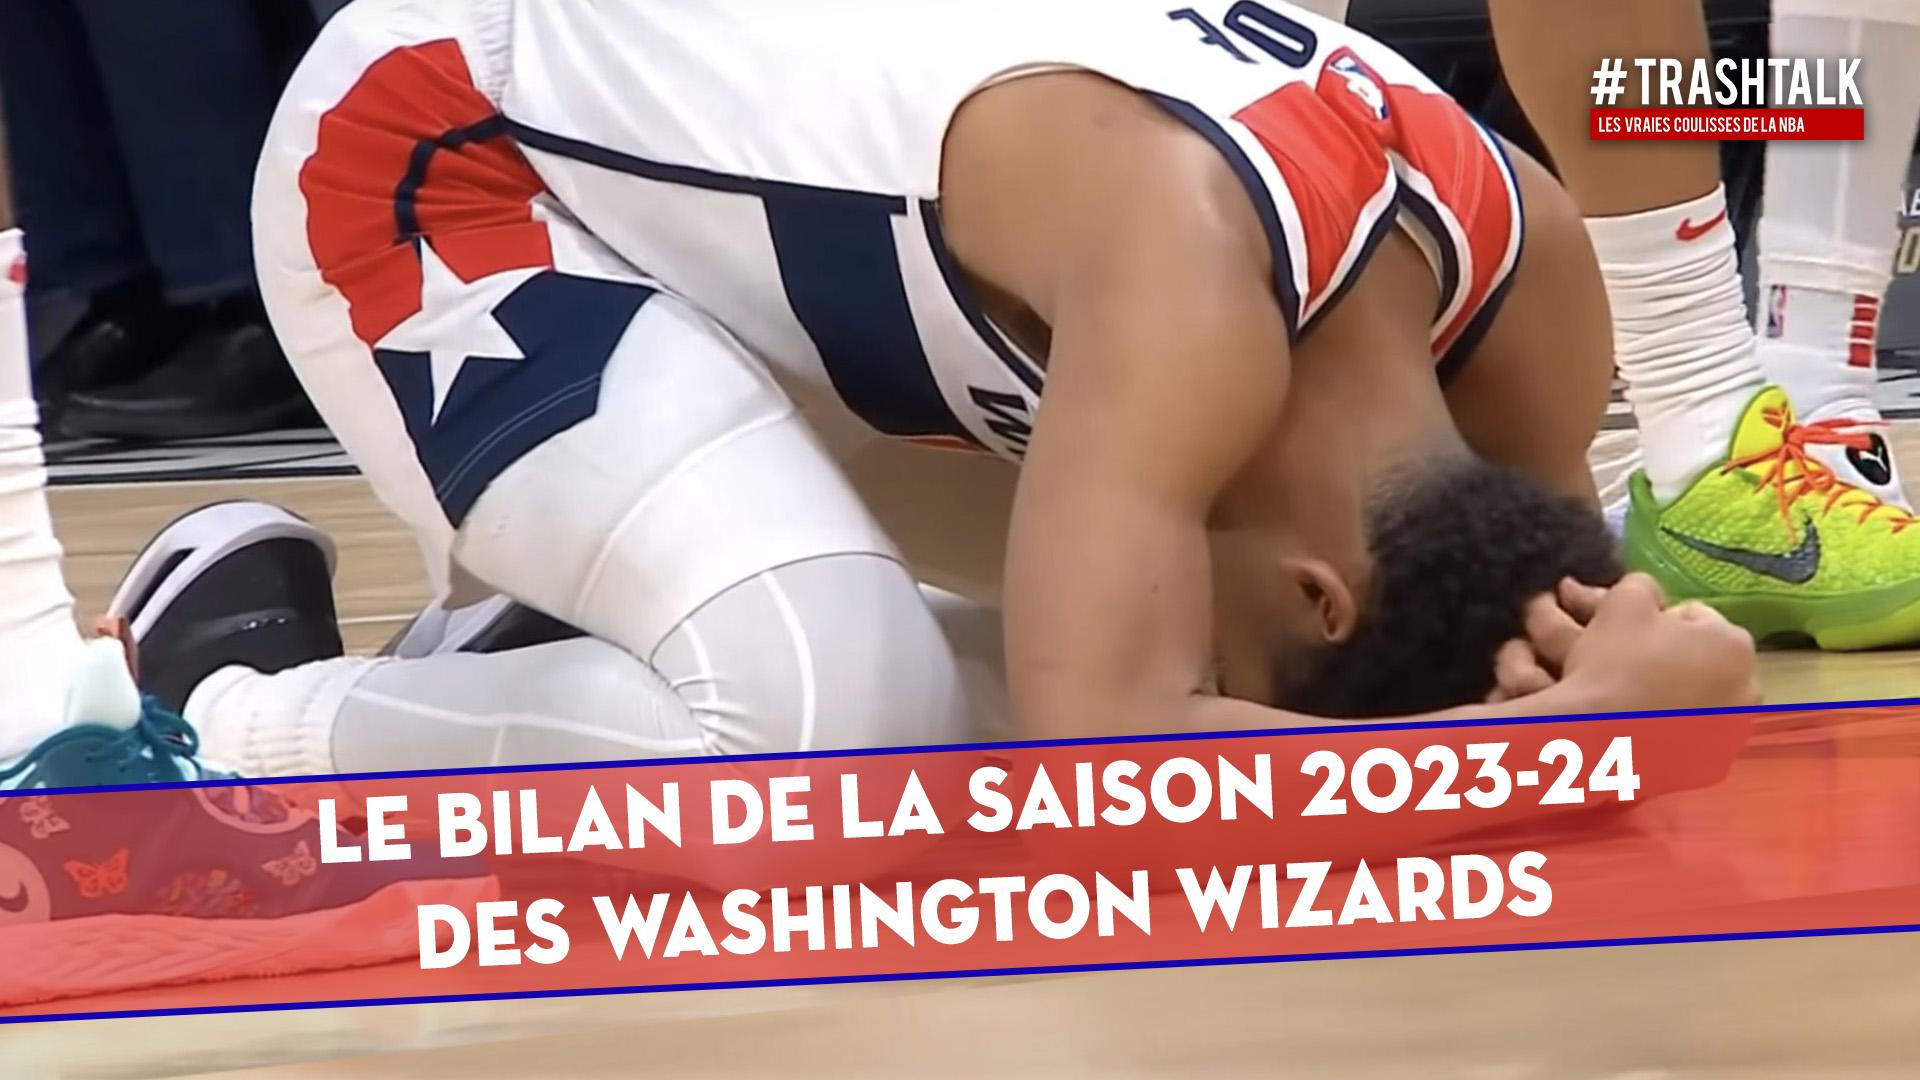 Couverture Bilan de la saison Washington Wizards 2023 2024